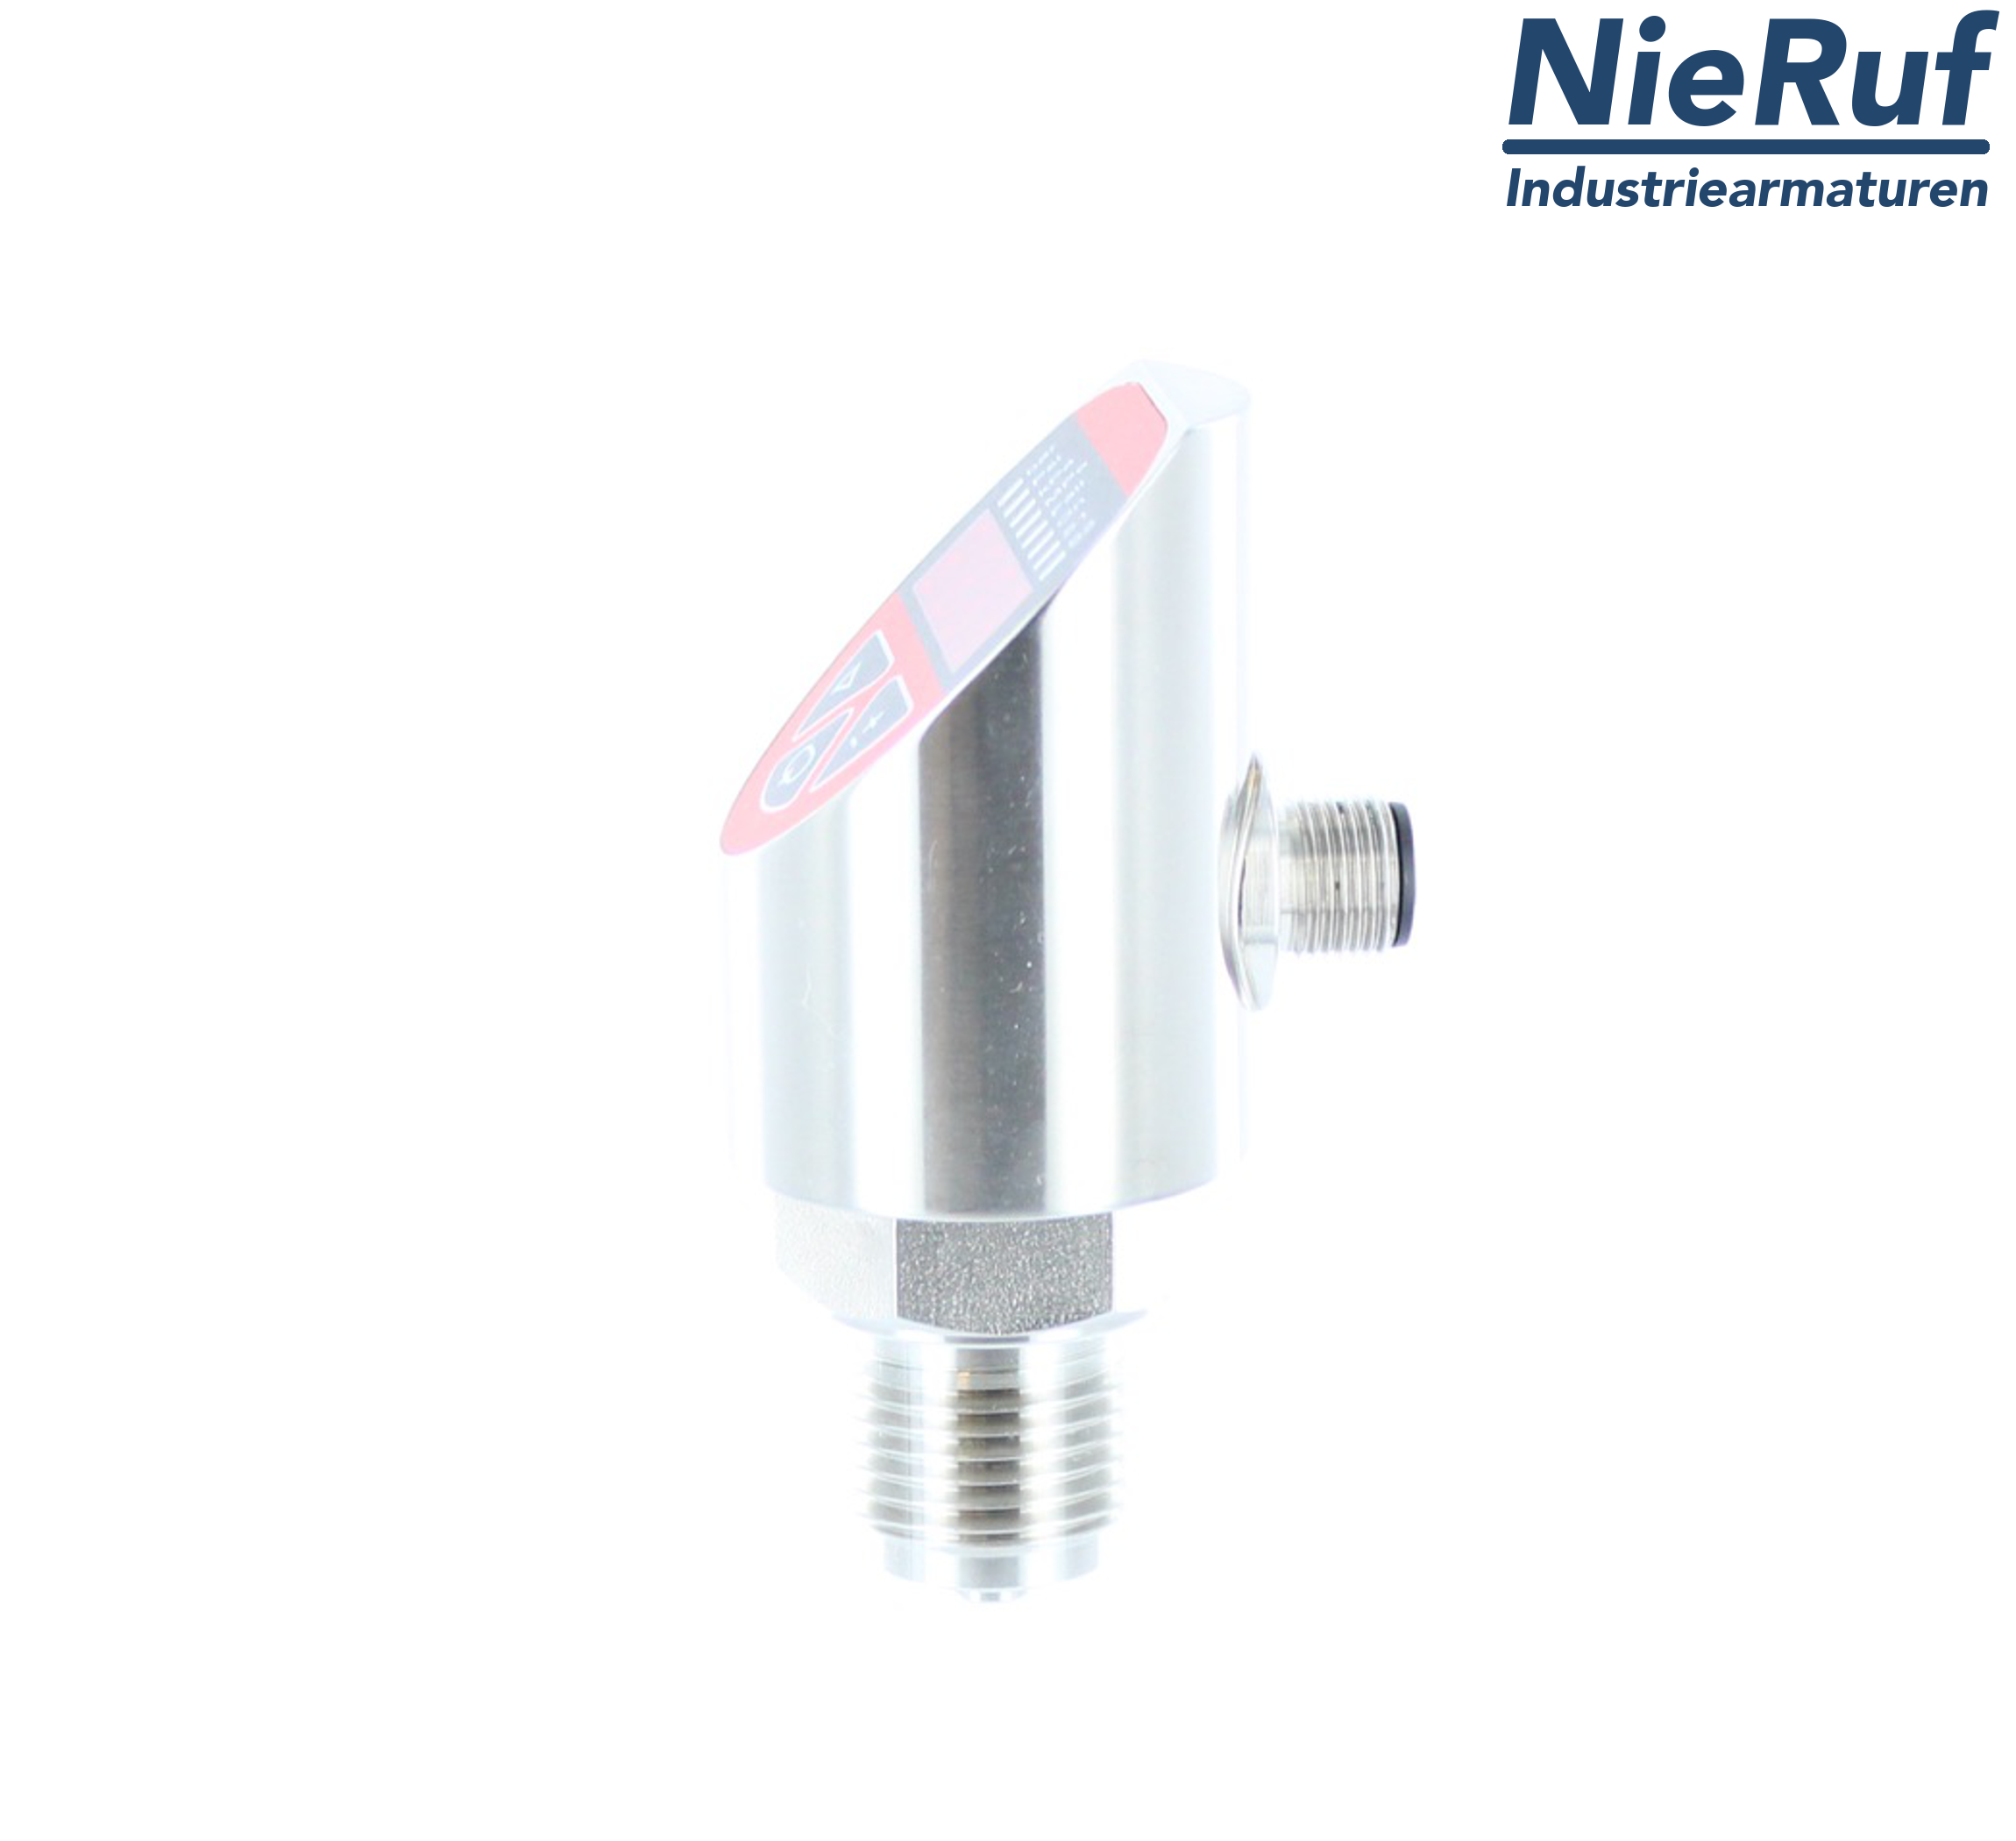 digital pressure sensor G 1/2" B 4-wire: 1xPNP, 1x4 - 20mA, Desina FPM 0,0 - 25,0 bar